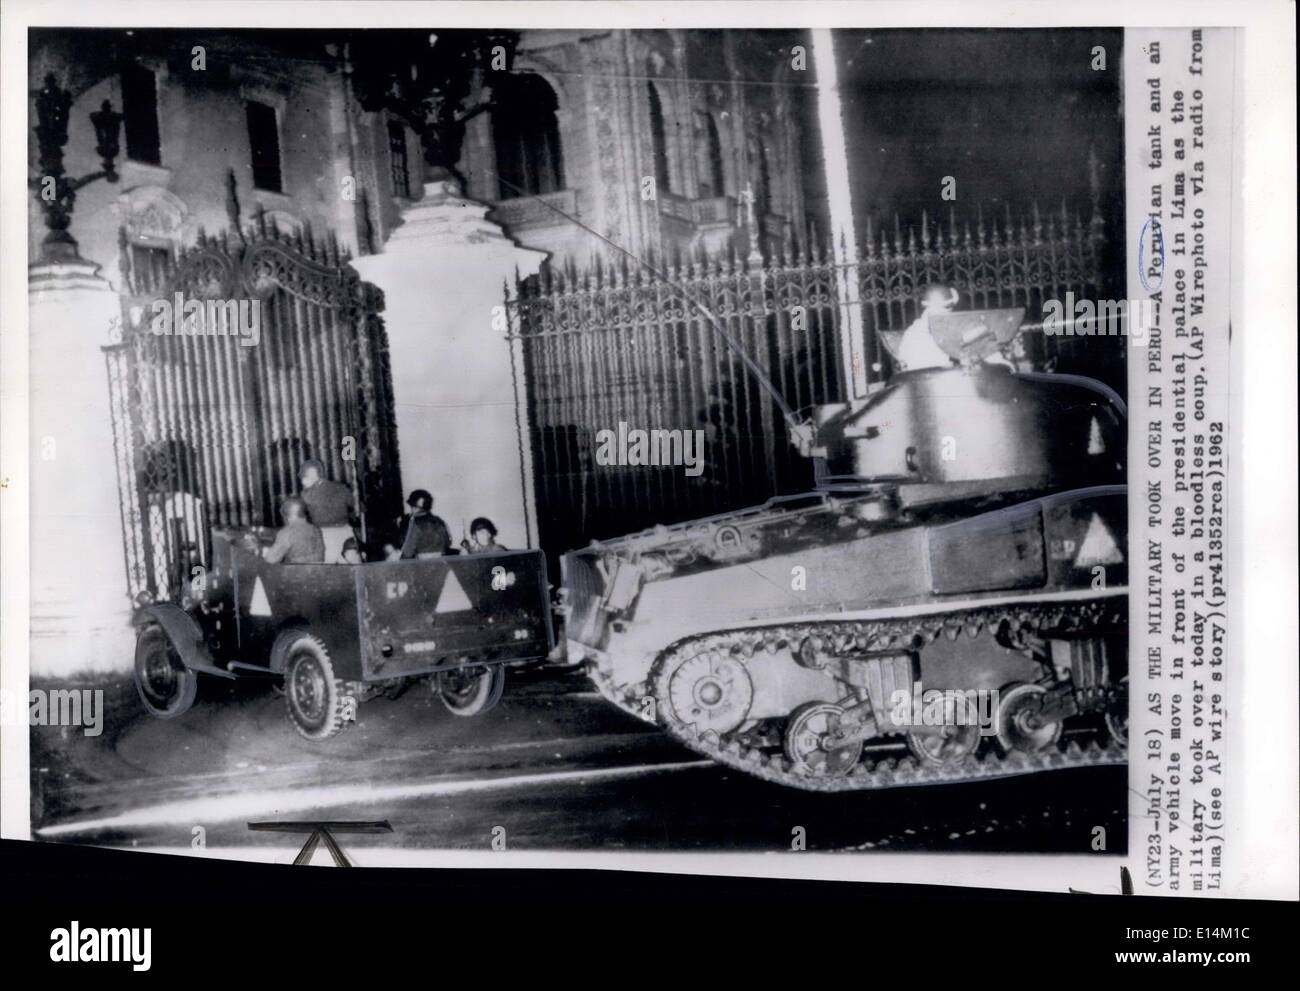 Abril 05, 2012 - como la toma de poder por los militares en Perú -- un tanque peruano y un vehículo del ejército en frente al palacio presidencial en Lima como los militares tomaron hoy en un golpe de estado incruento. (AP wire-photo via radio forma Lima) ( véase AP wire Historia) Foto de stock